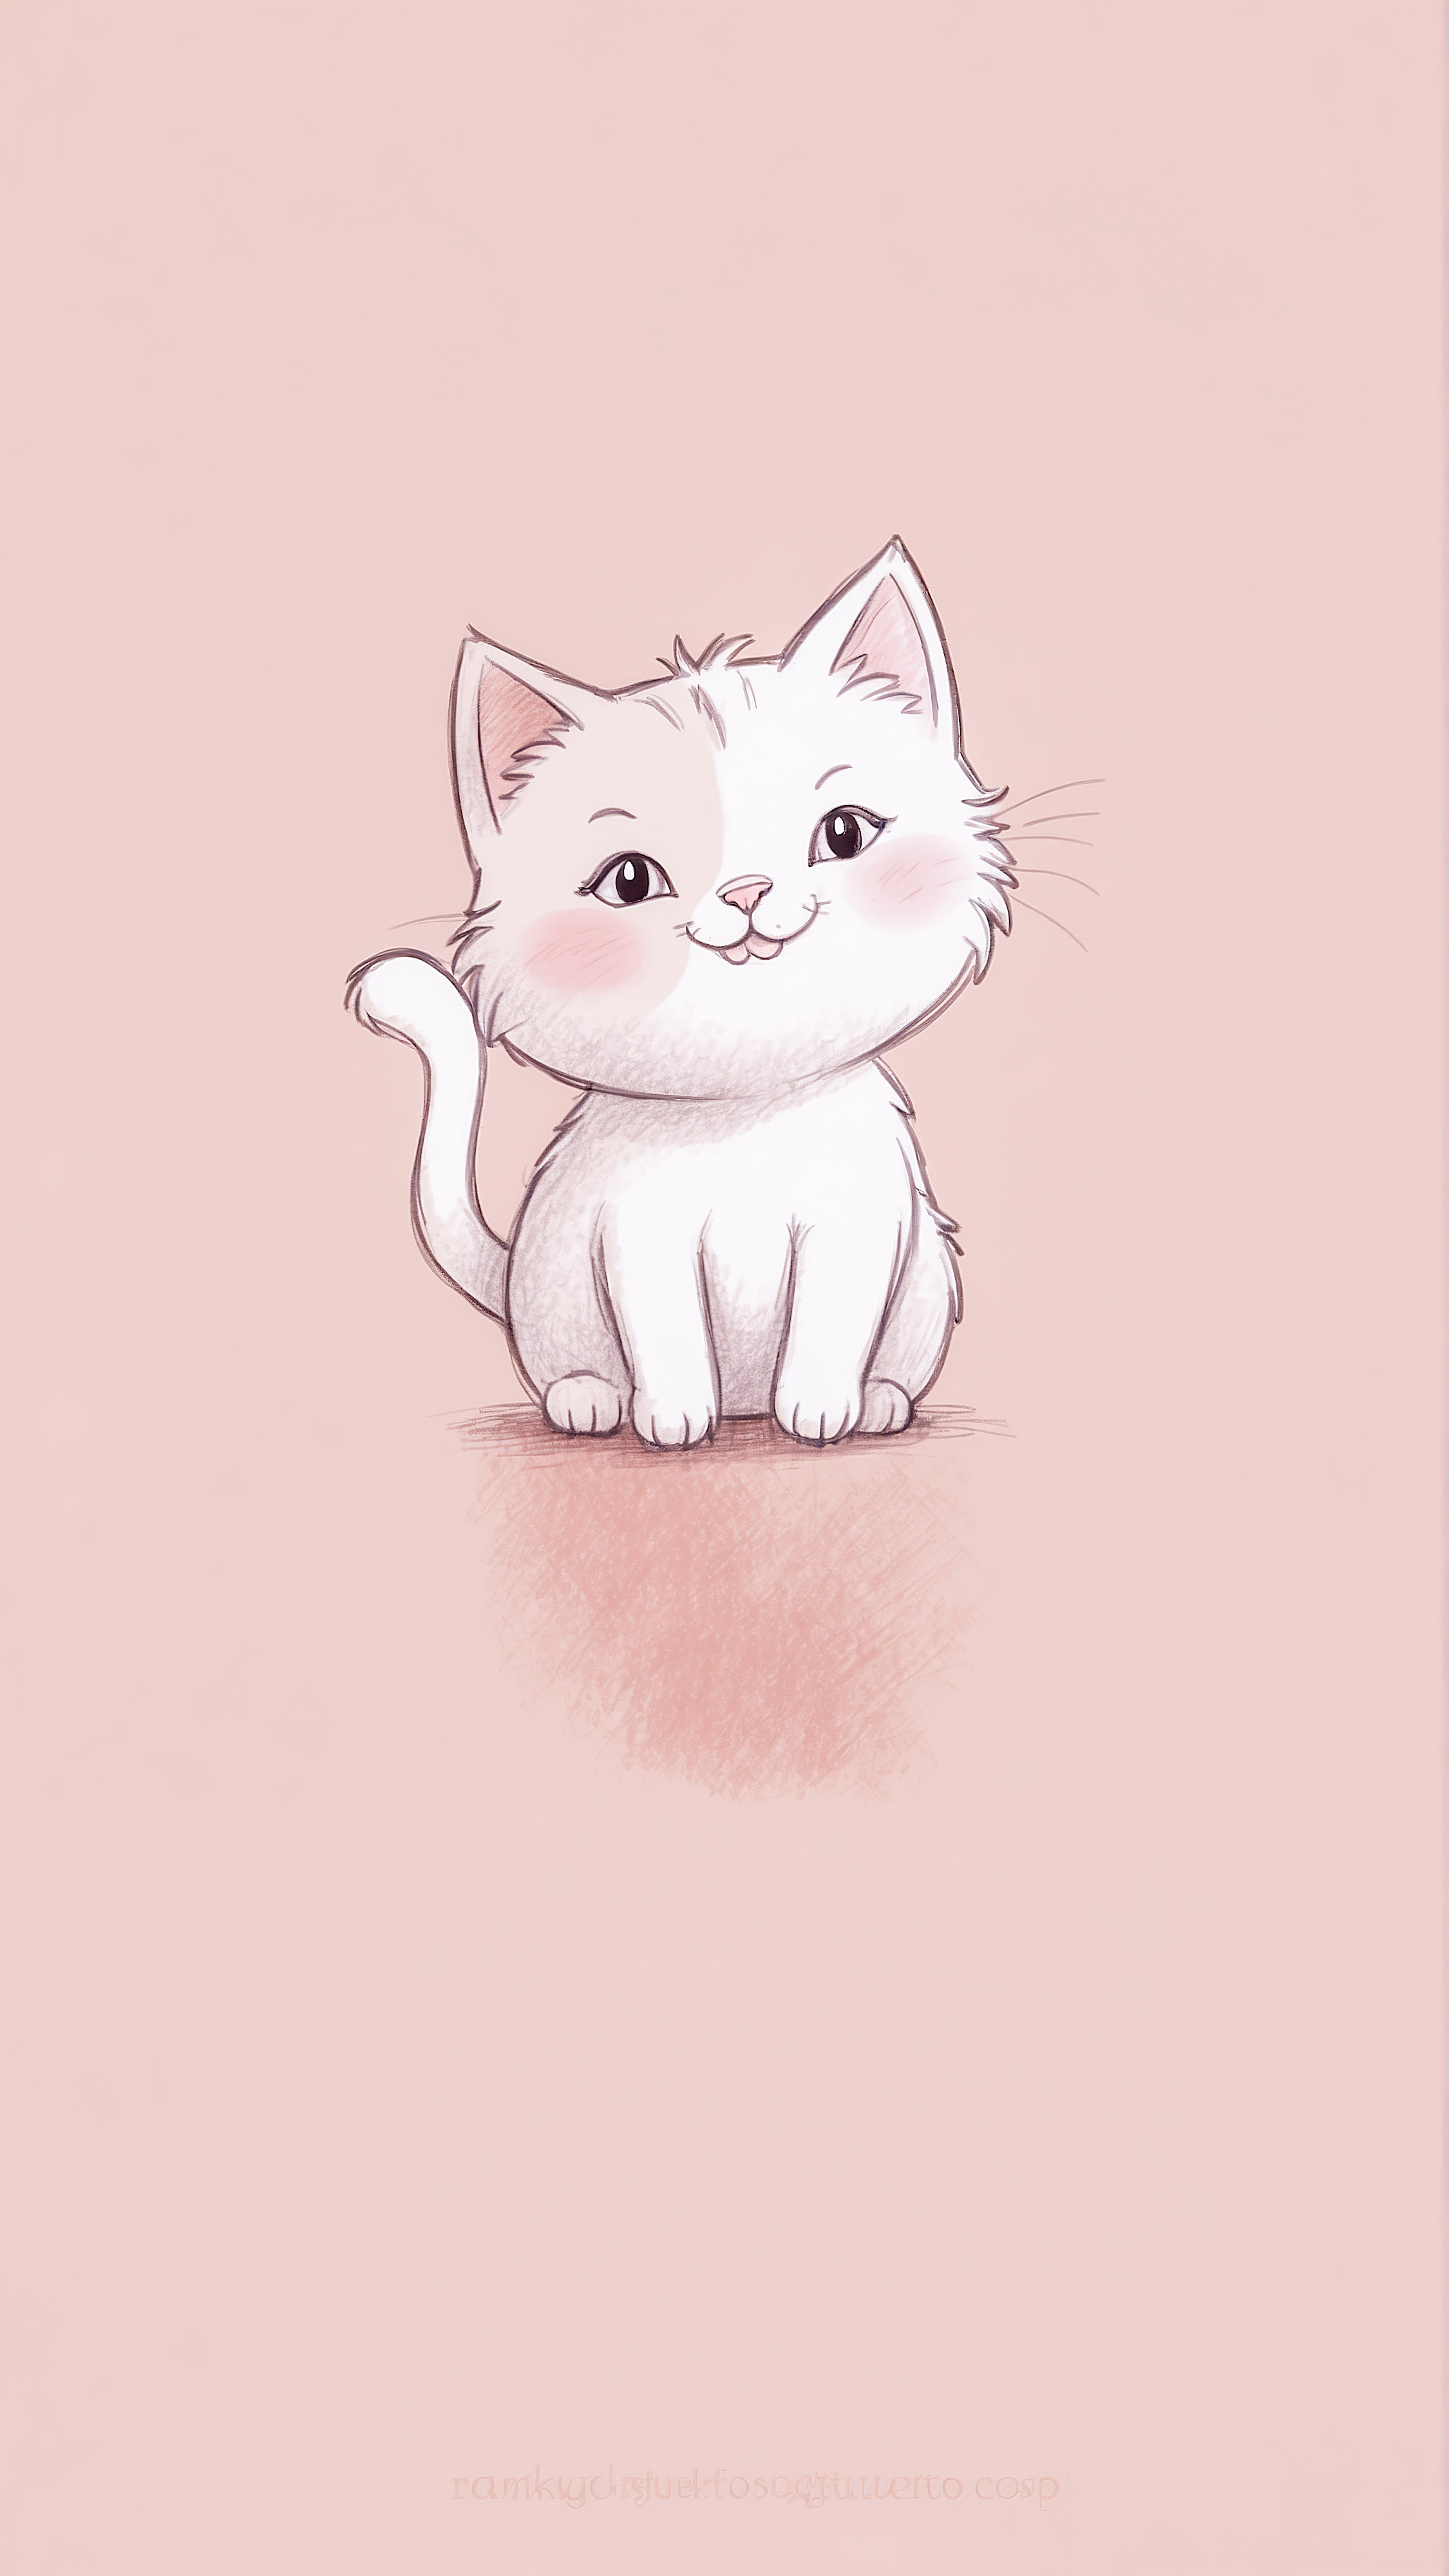 Capturez l'essence de la simplicité avec notre joli fond d'écran pour iPhone, présentant un chat mignon souriant sur un arrière-plan beige.